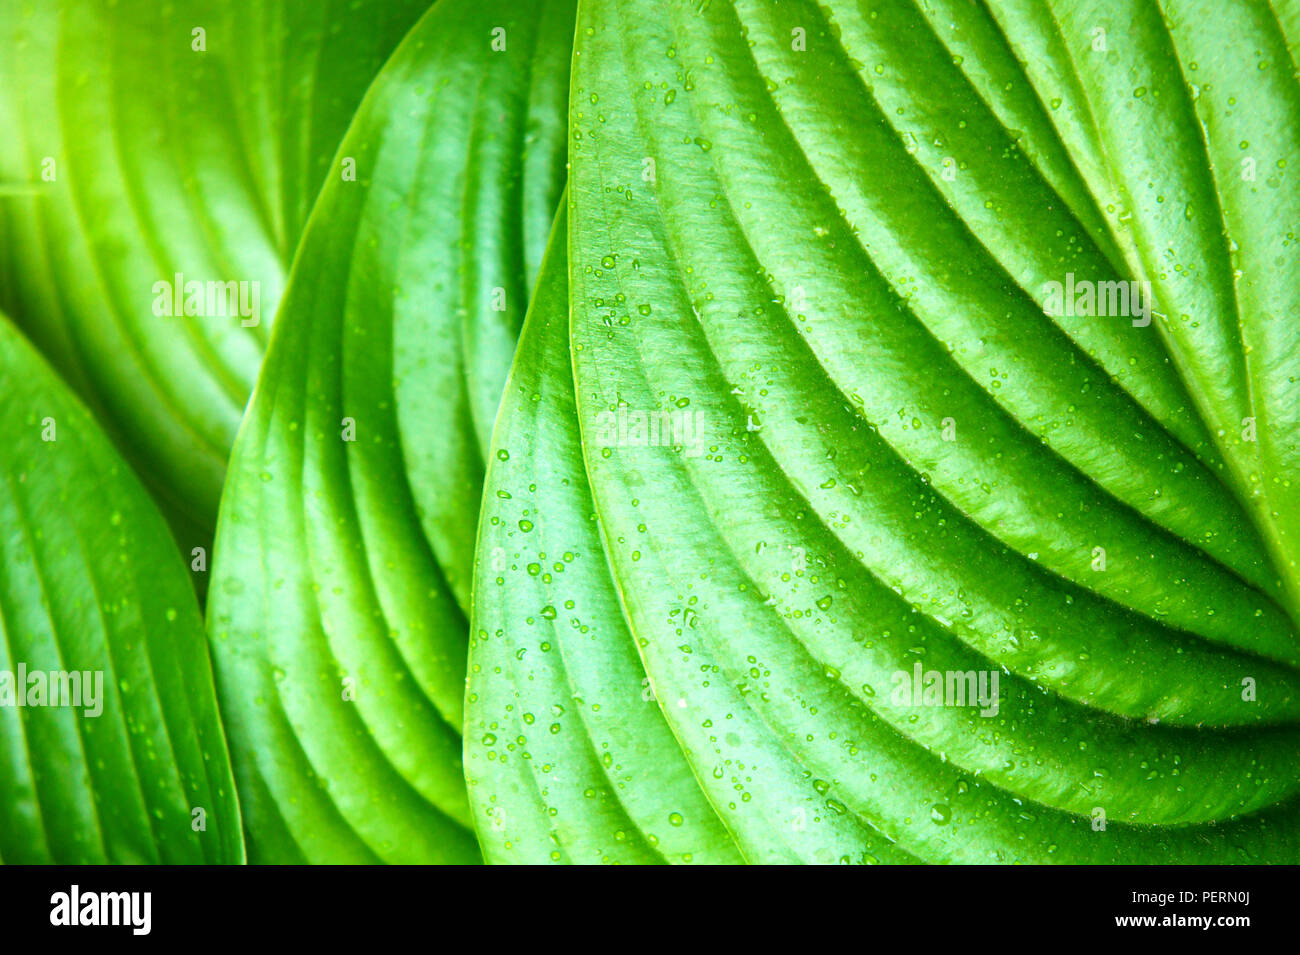 Feuilles vertes après pluie d'été, grandes feuilles vertes tropicales avec des veines Banque D'Images